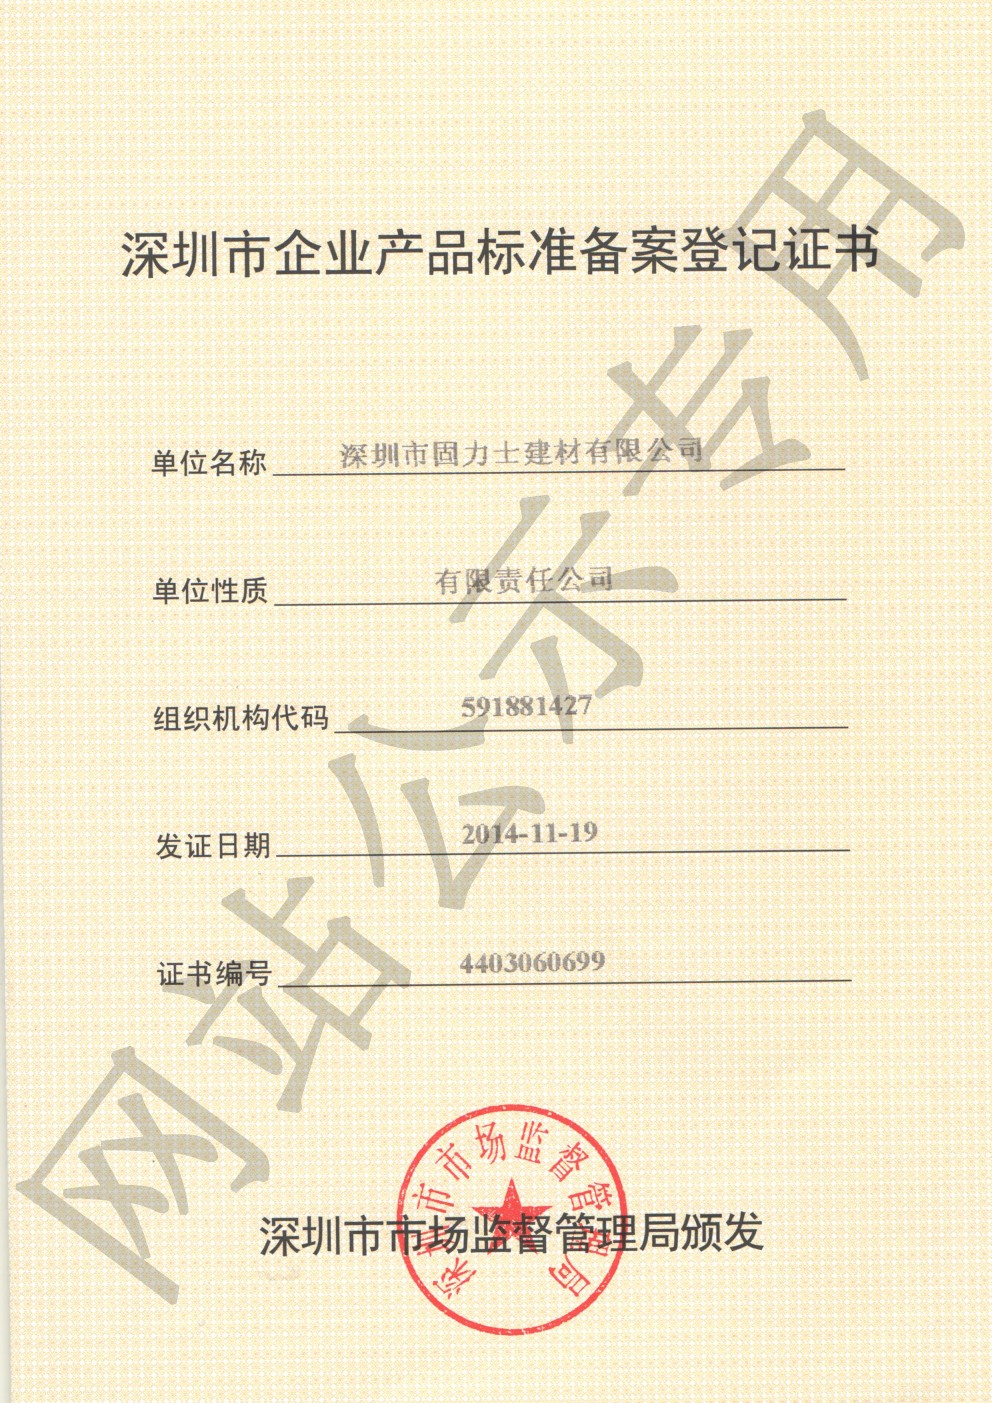 阿瓦提企业产品标准登记证书